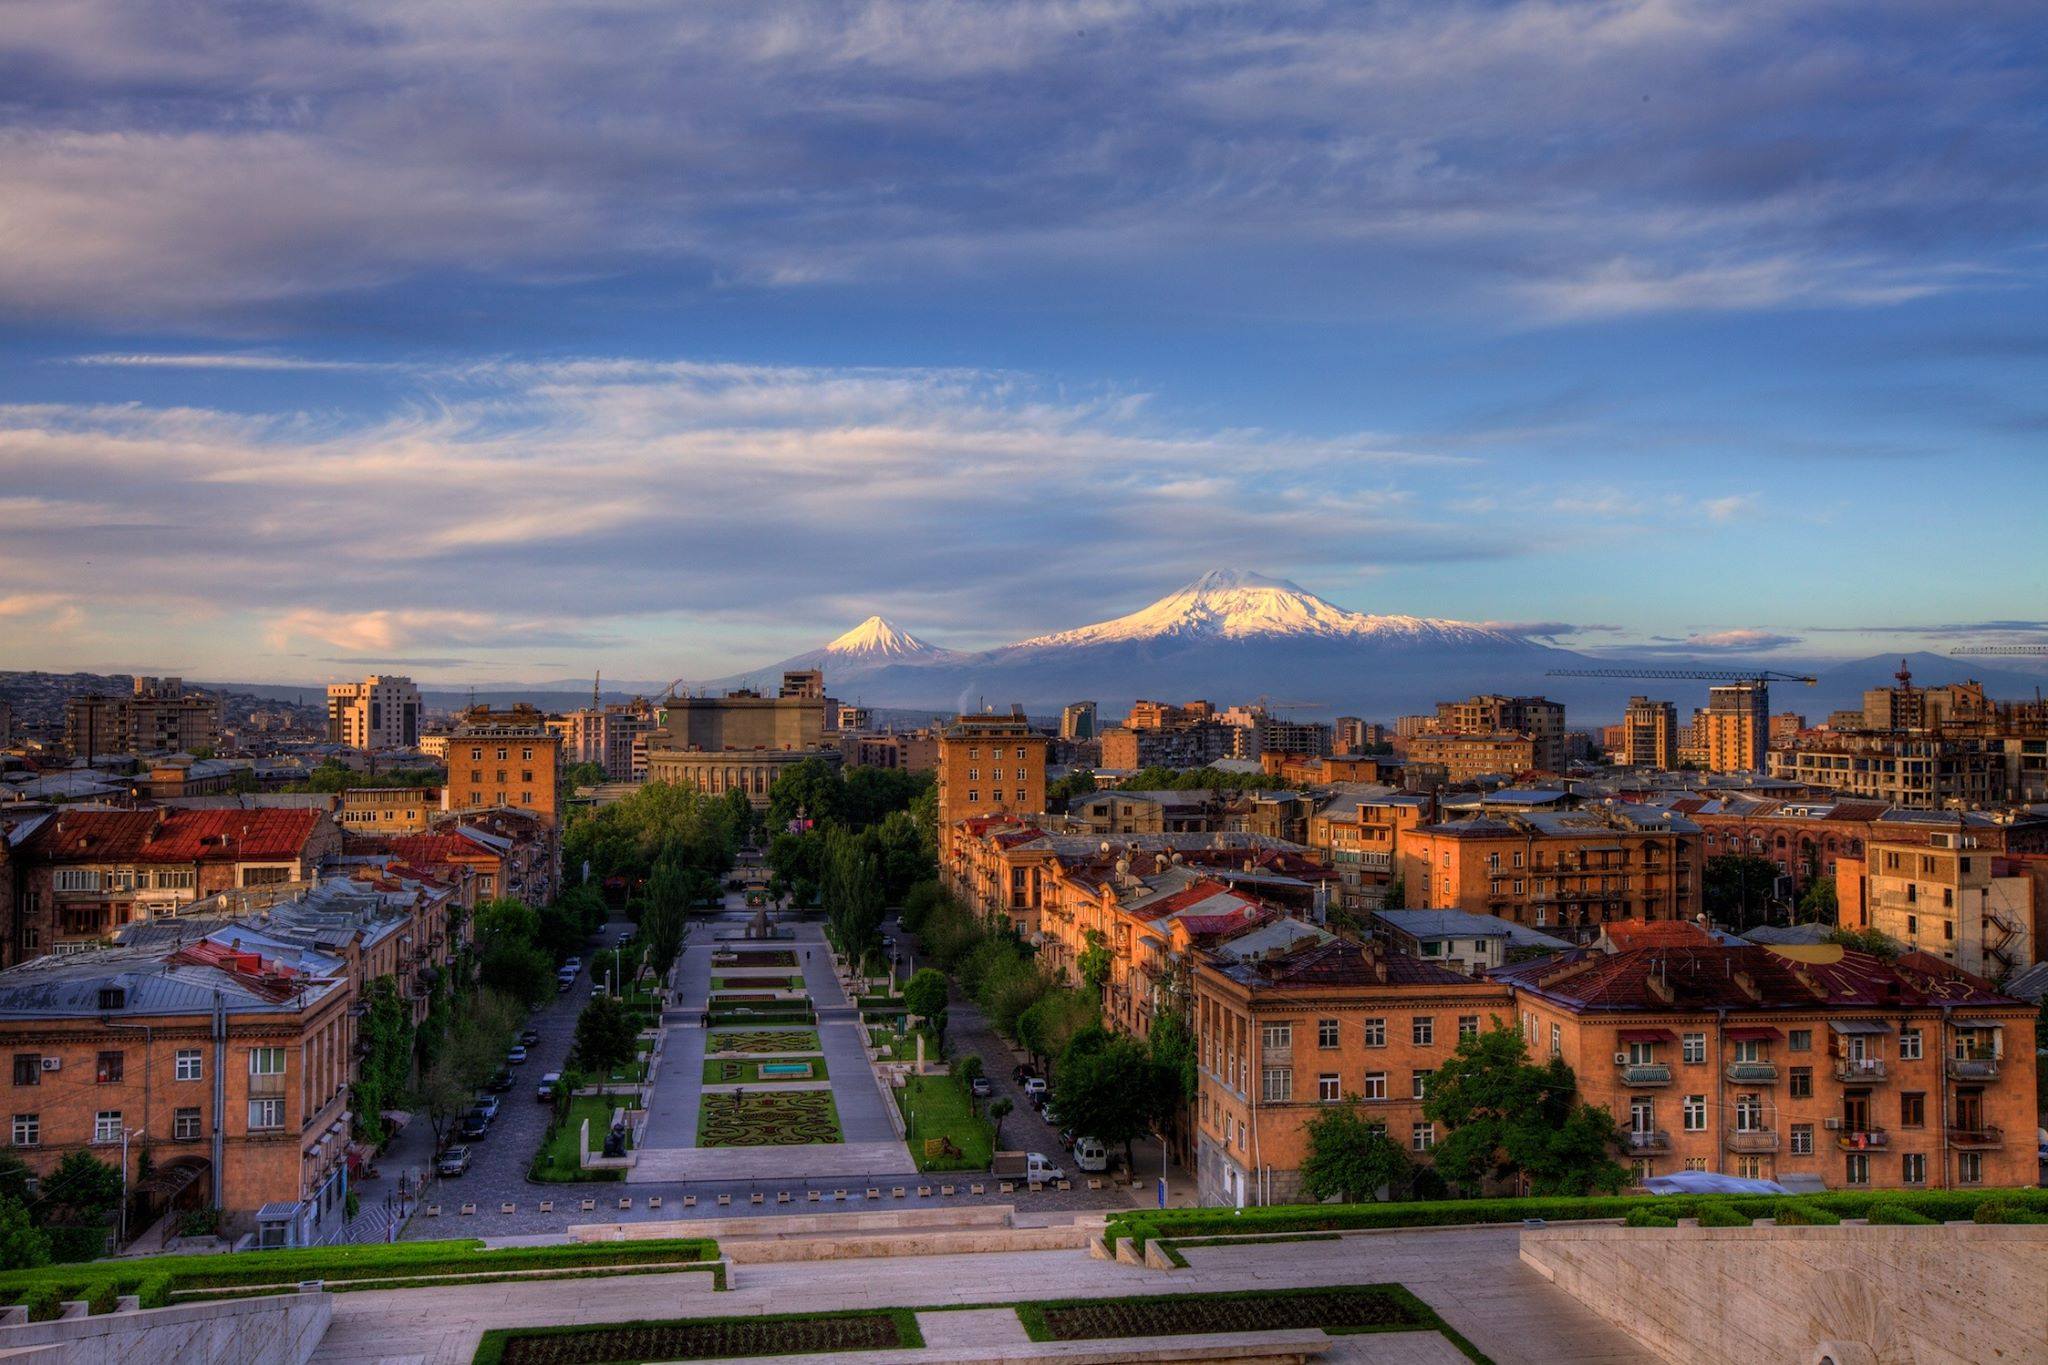 Երևանում մթնոլորտային օդի որակը՝ ապրիլի 18-24-ի դրությամբ